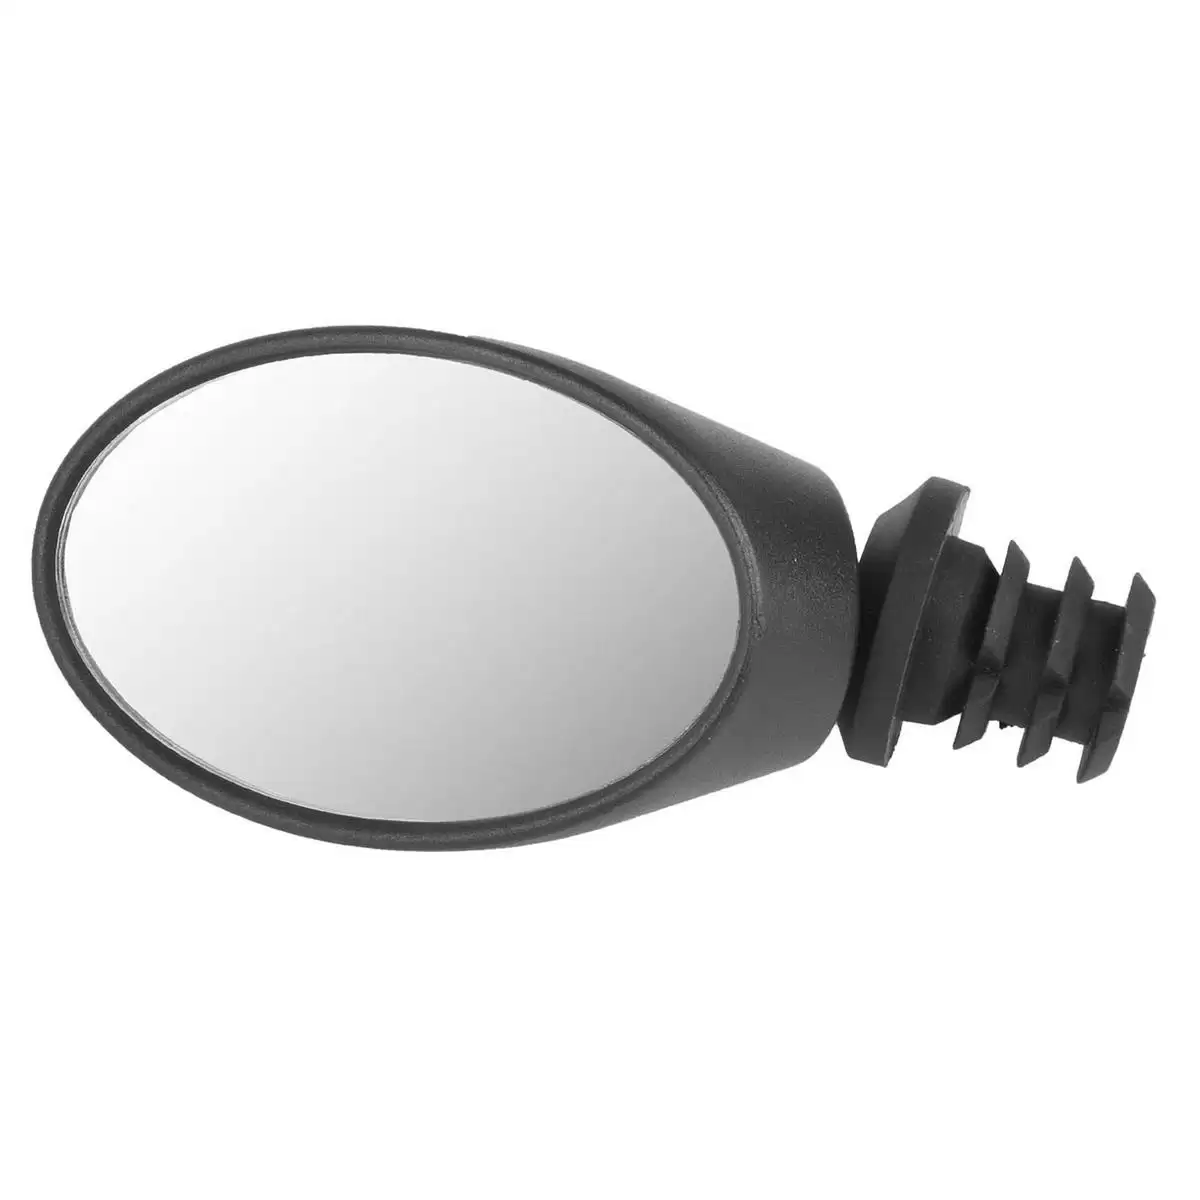 Specchietto bicicletta regolabile destro / sinistro Spy Oval - image